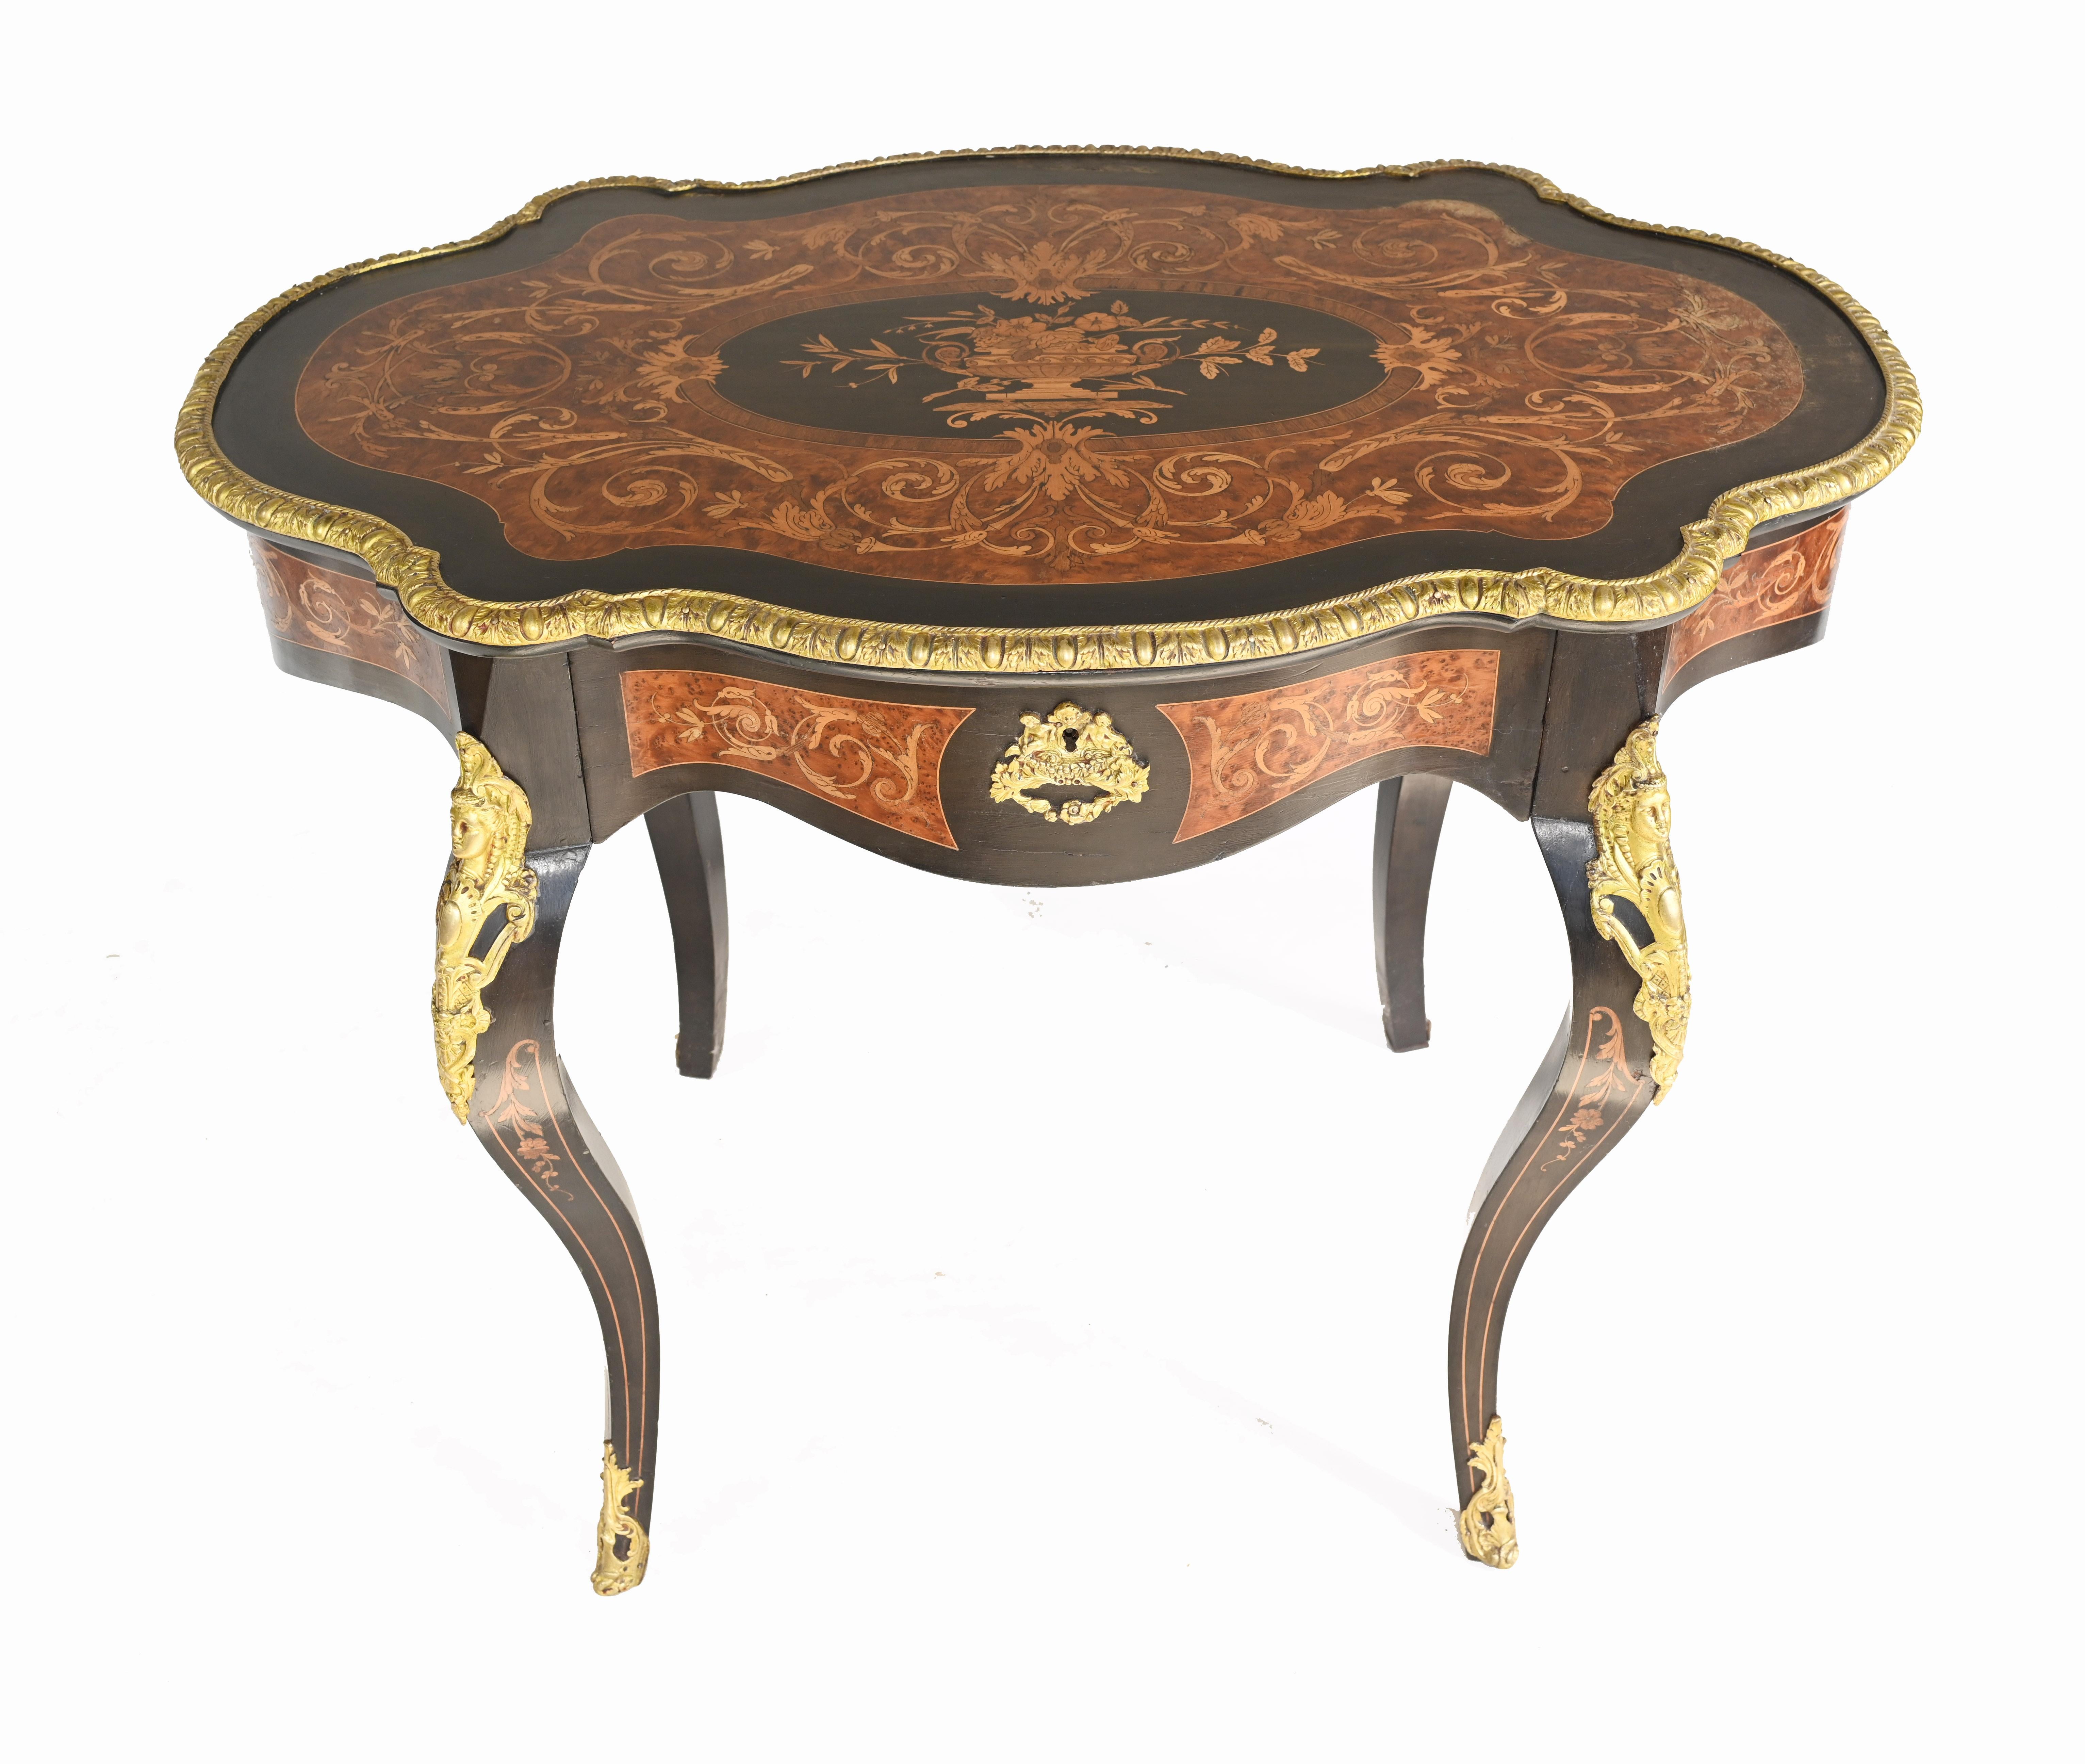 Charmanter Louis XVI-Mitteltisch mit geschwungener Platte
Sehr markanter Look - kann auch als Schreibtisch dienen
Wir datieren dieses Stück auf ca. 1880
Gekauft bei einem Händler am Marche Biron auf dem Pariser Antiquitätenmarkt
Einige unserer